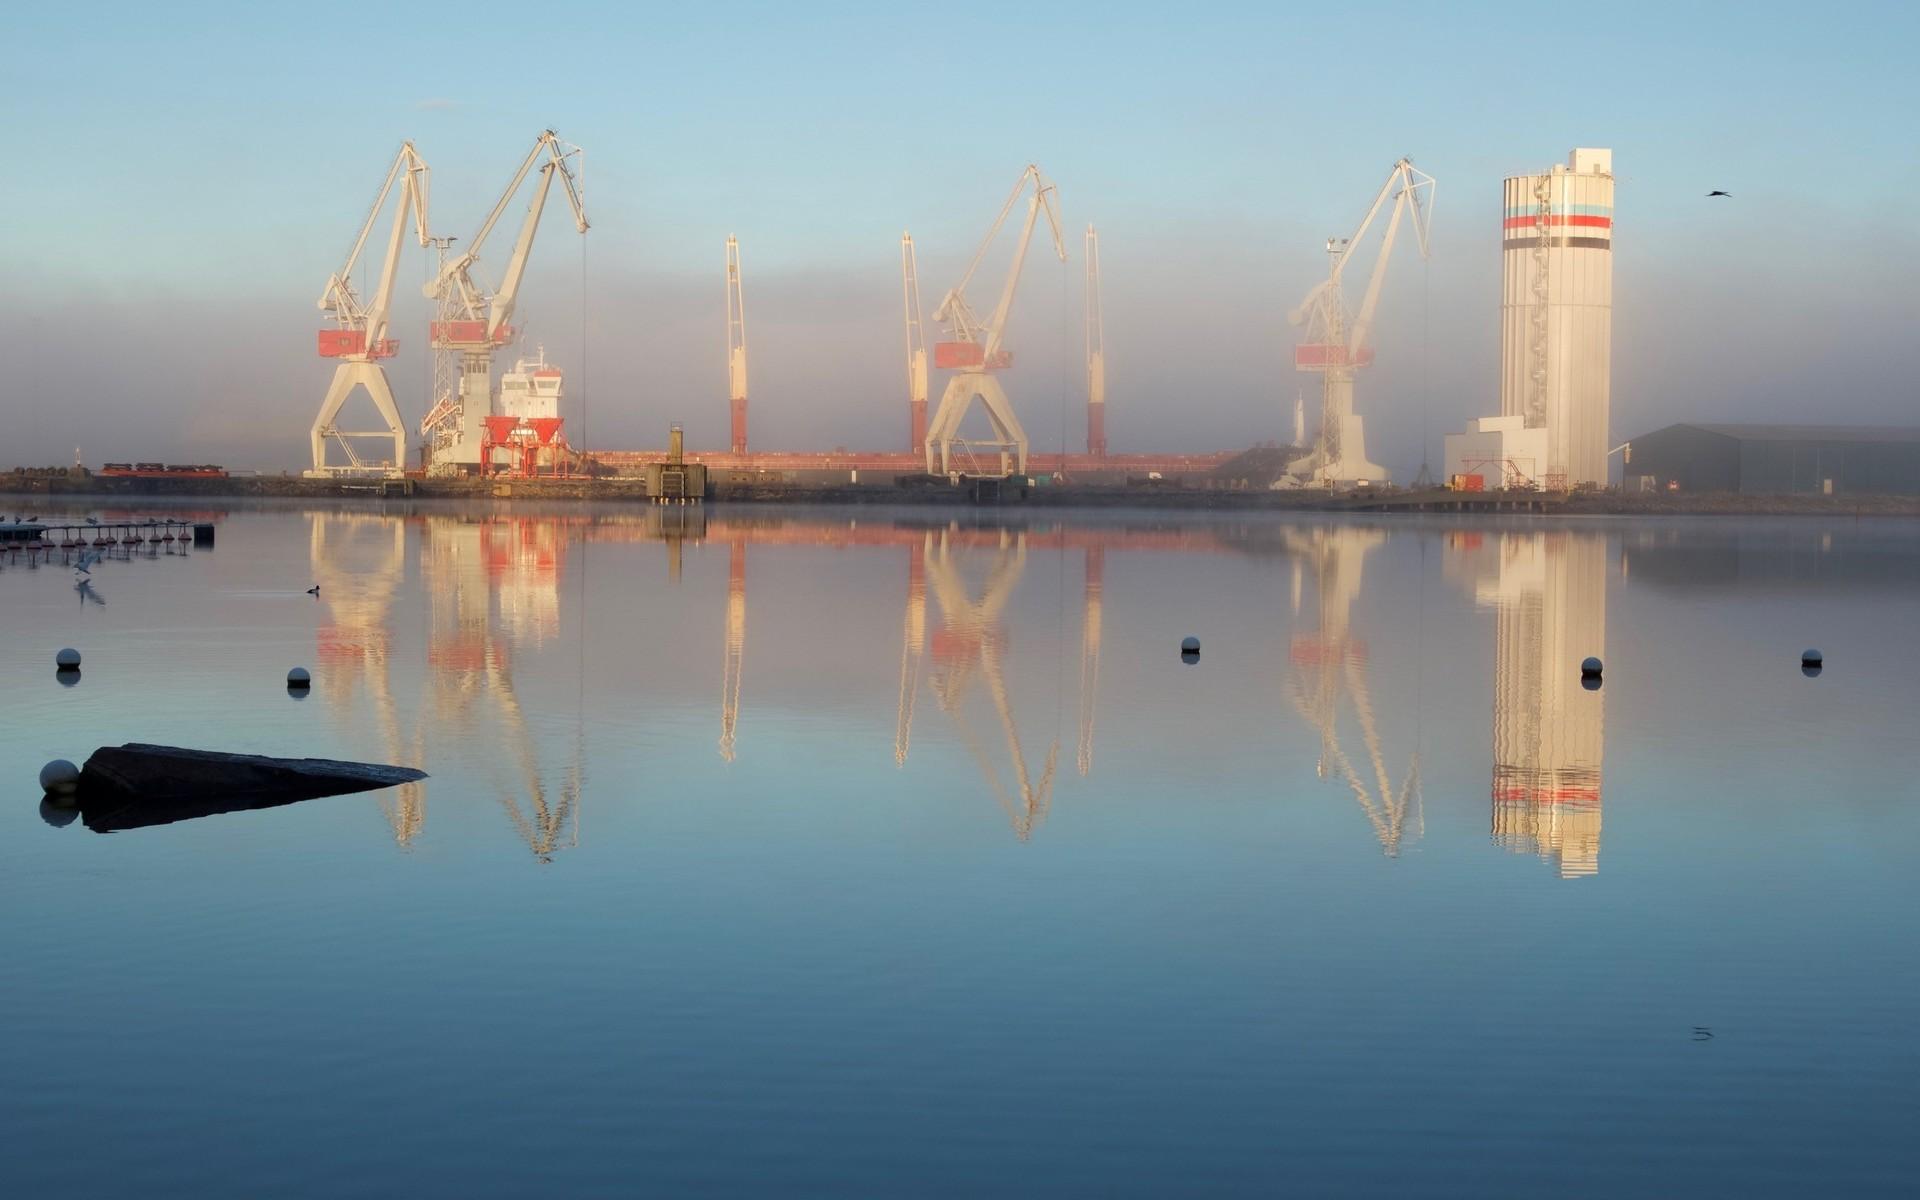 ”Bilden är tagen vid Skepsviken mot hamnen 2016, tycker den ger en bra bild över vår stad vid vattnet där industrin forfarande sätter sin prägel.”